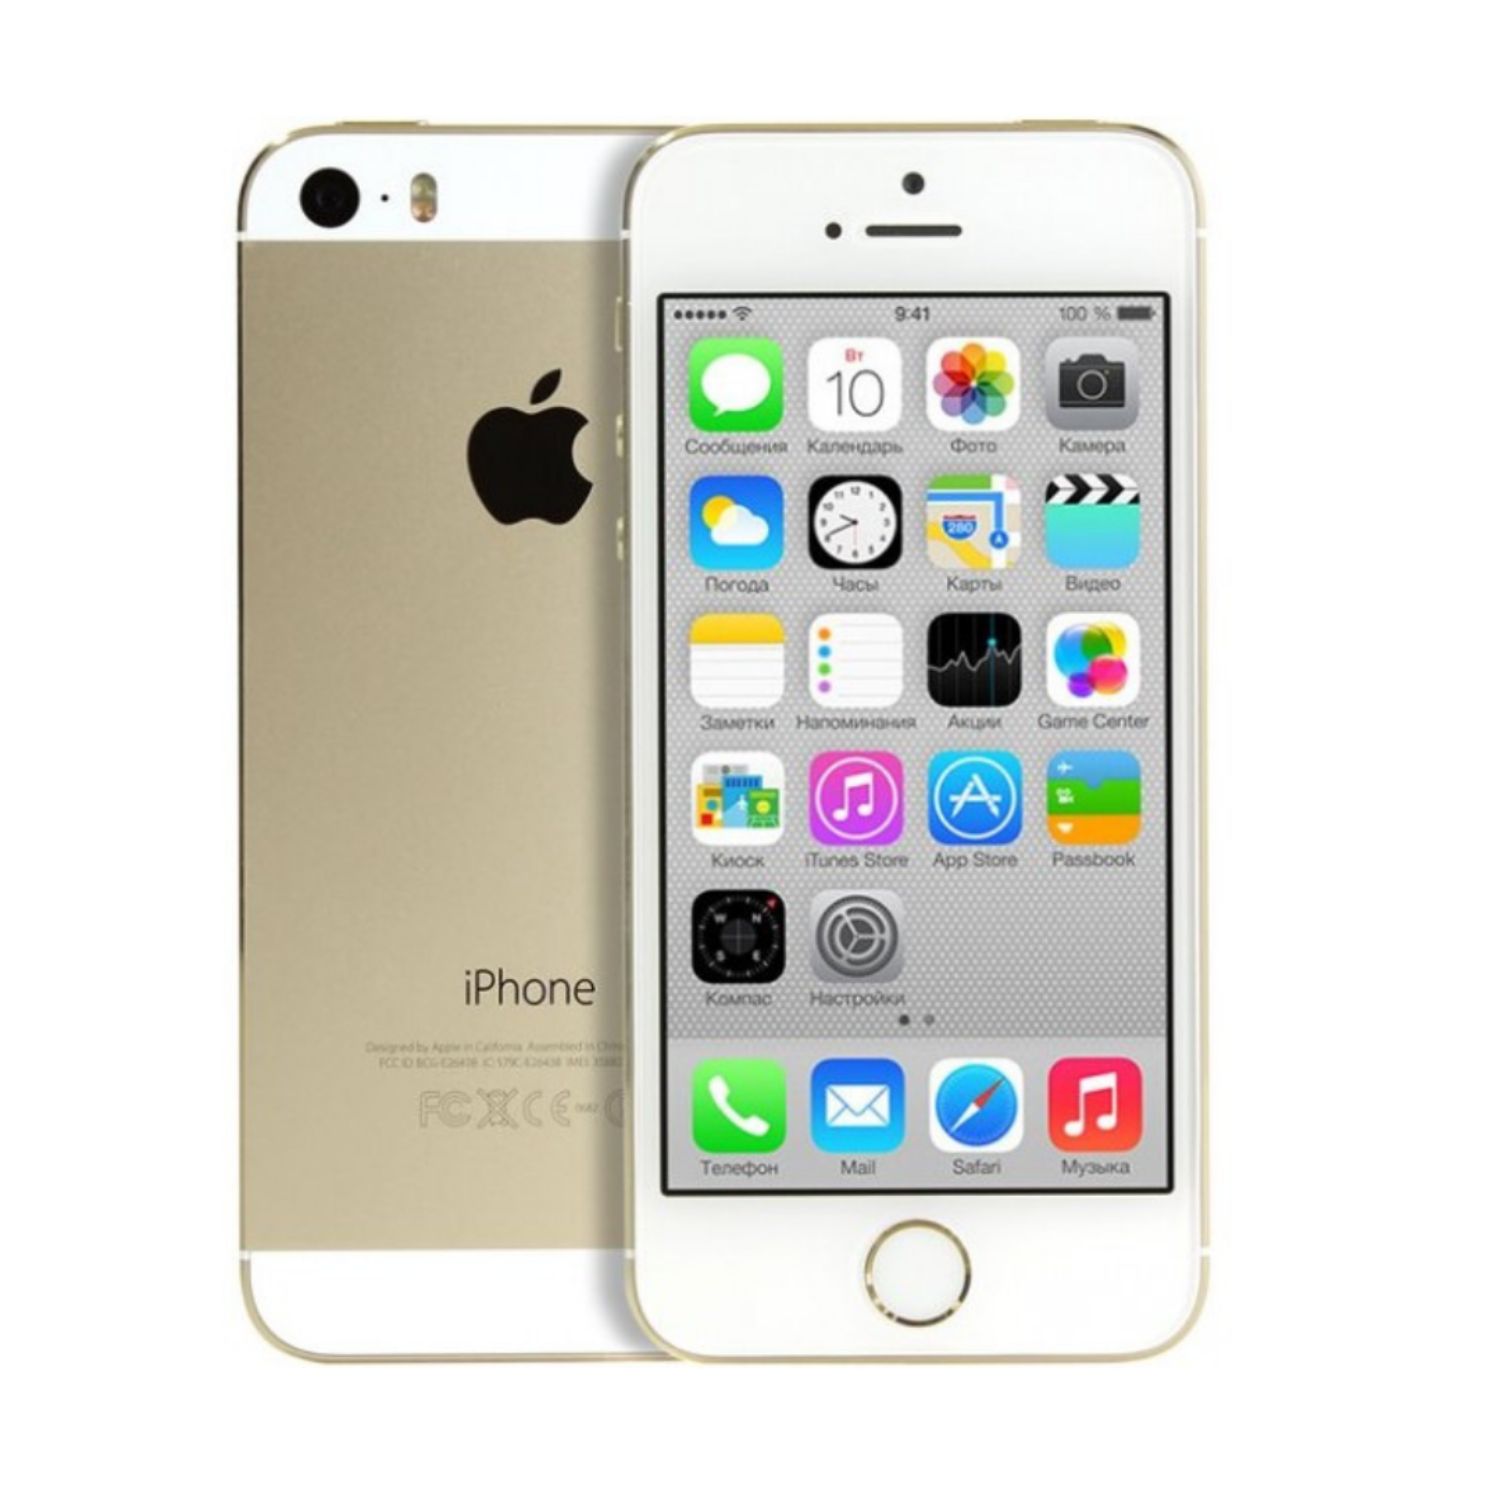 Купить айфон в уссурийске. Apple iphone 5s 32gb. Apple iphone 5s 32gb Gold. Apple iphone 5s 64gb. Apple iphone 5.